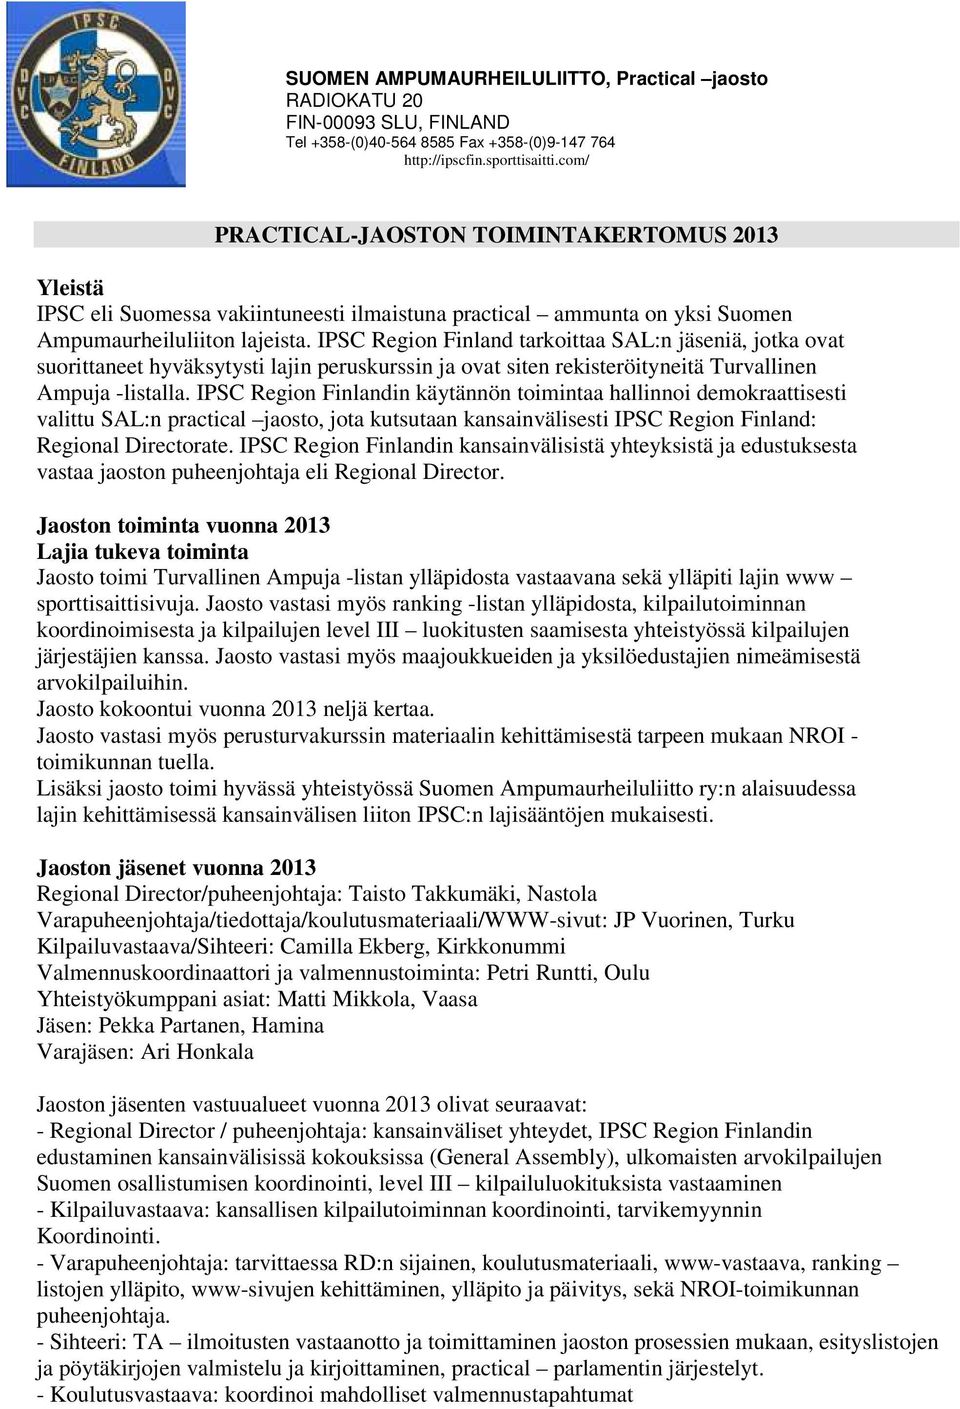 IPSC Region Finlandin käytännön toimintaa hallinnoi demokraattisesti valittu SAL:n practical jaosto, jota kutsutaan kansainvälisesti IPSC Region Finland: Regional Directorate.